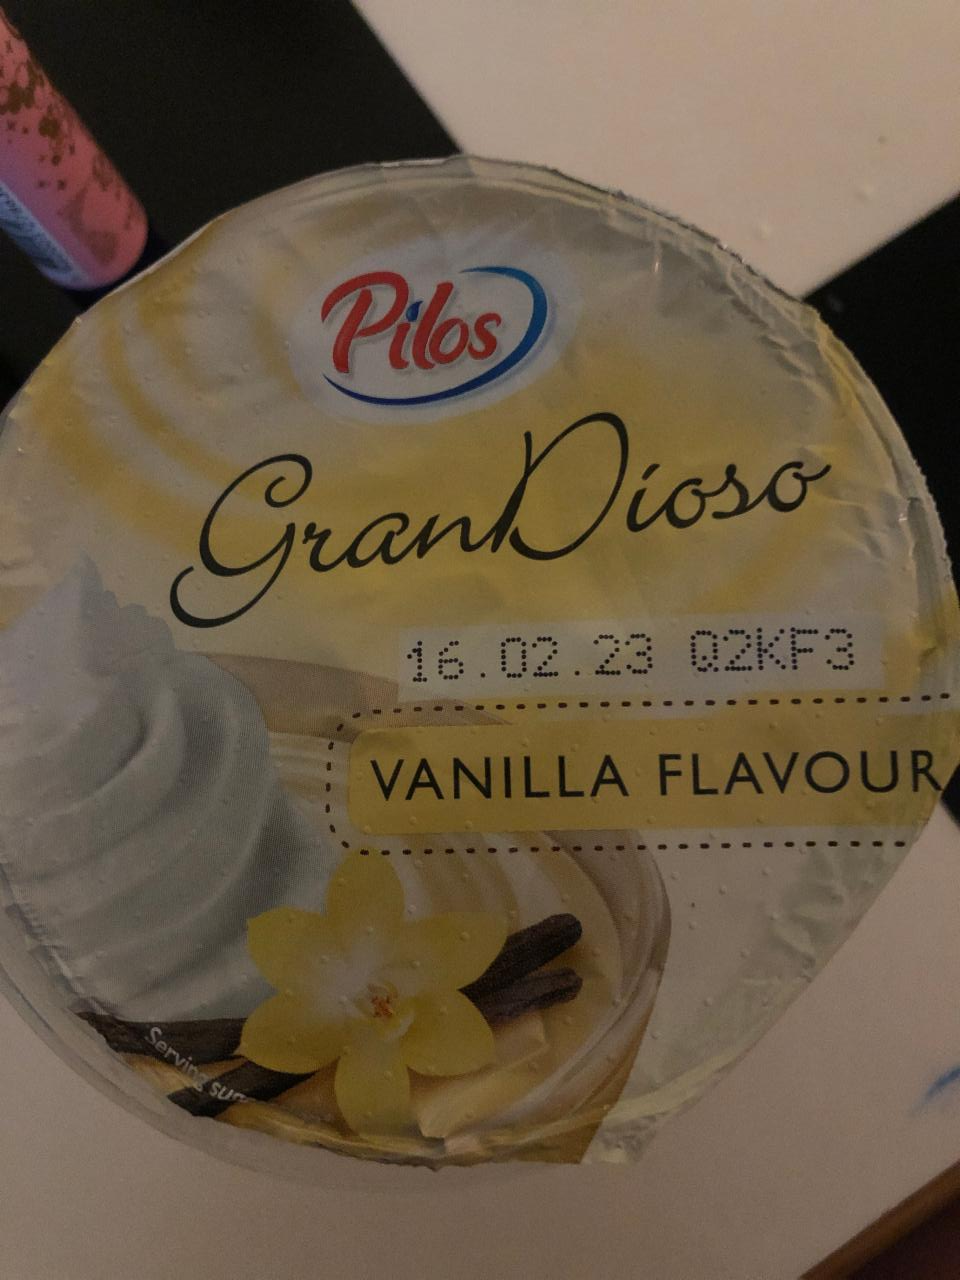 Фото - Gran dioso vanilla flavour Pilos